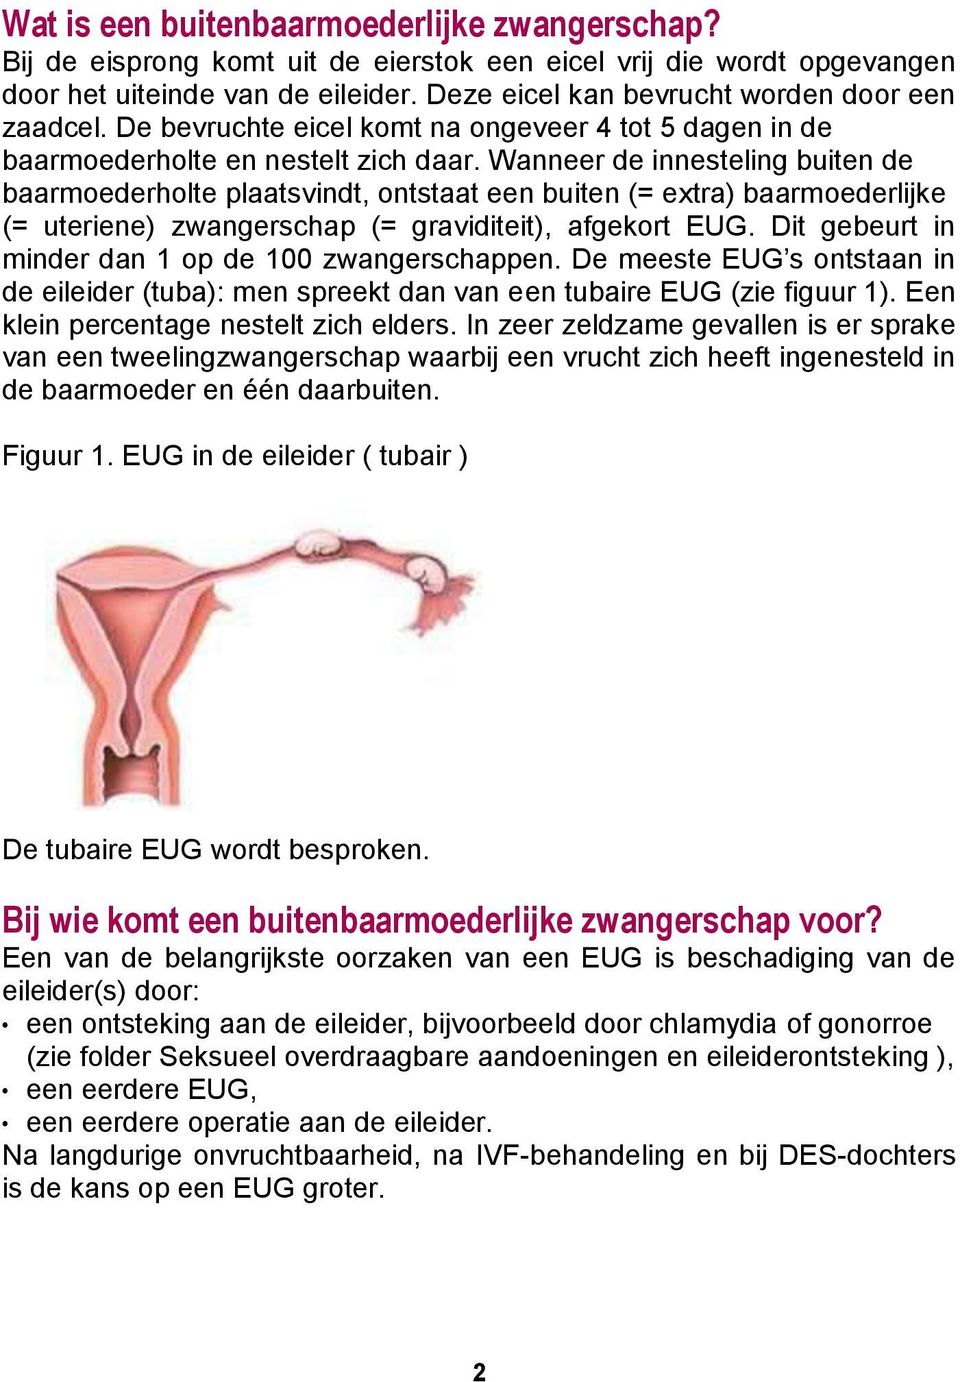 Wanneer de innesteling buiten de baarmoederholte plaatsvindt, ontstaat een buiten (= extra) baarmoederlijke (= uteriene) zwangerschap (= graviditeit), afgekort EUG.